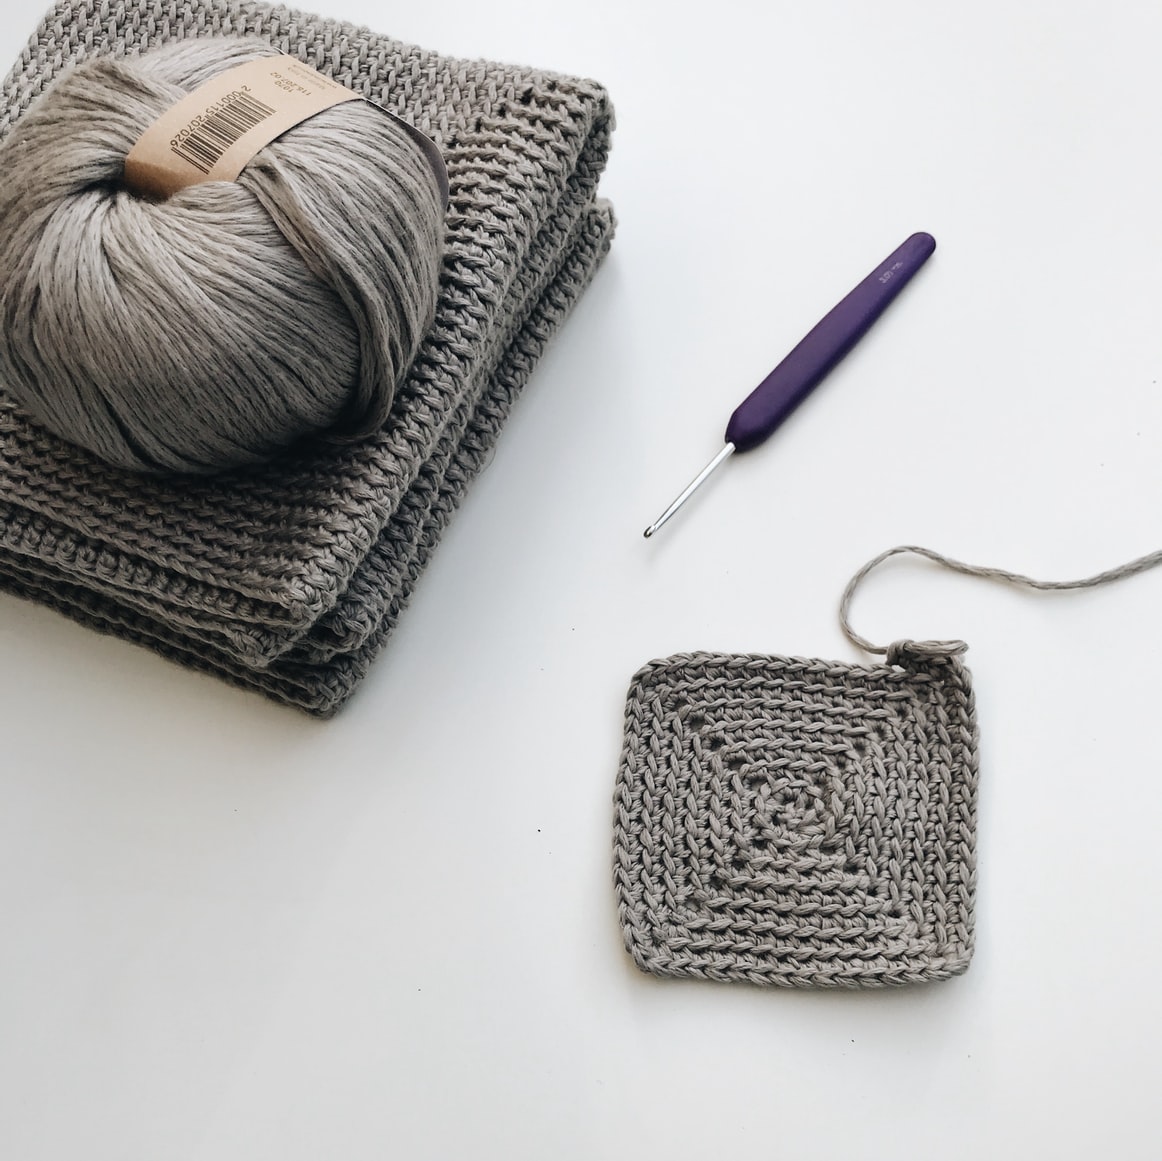 Types of Crochet Hooks